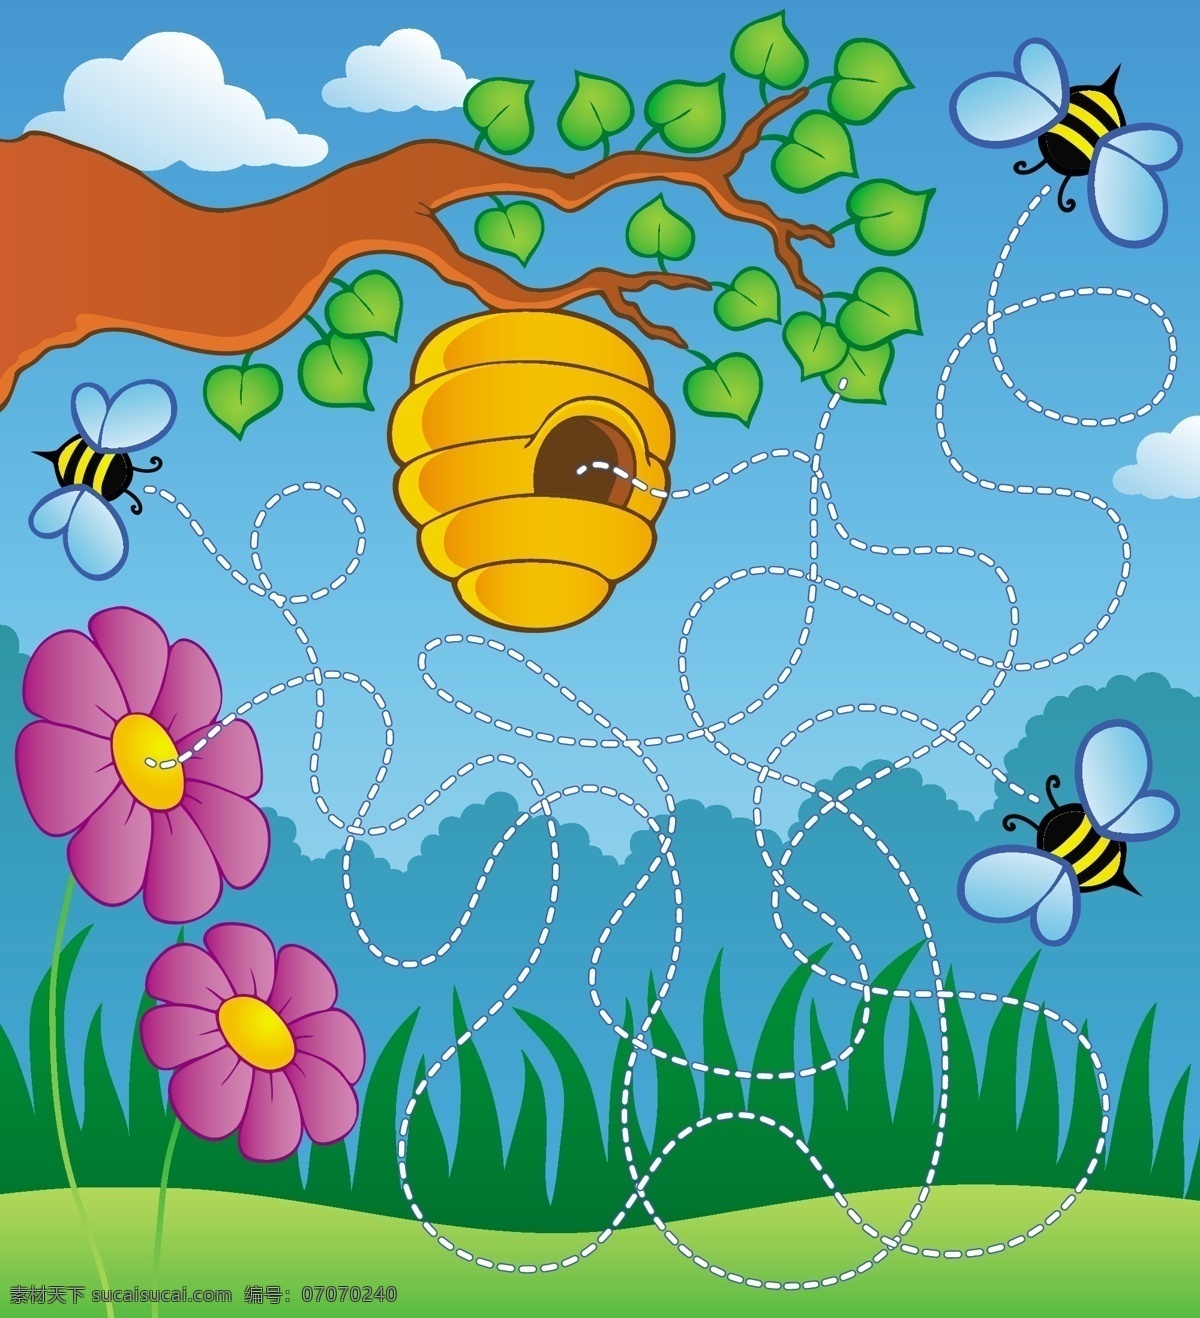 迷宫插图 手绘卡通插画 蜜蜂 蜂巢 采蜜 儿童绘画 卡通背景 背景底纹 文化艺术 绘画书法